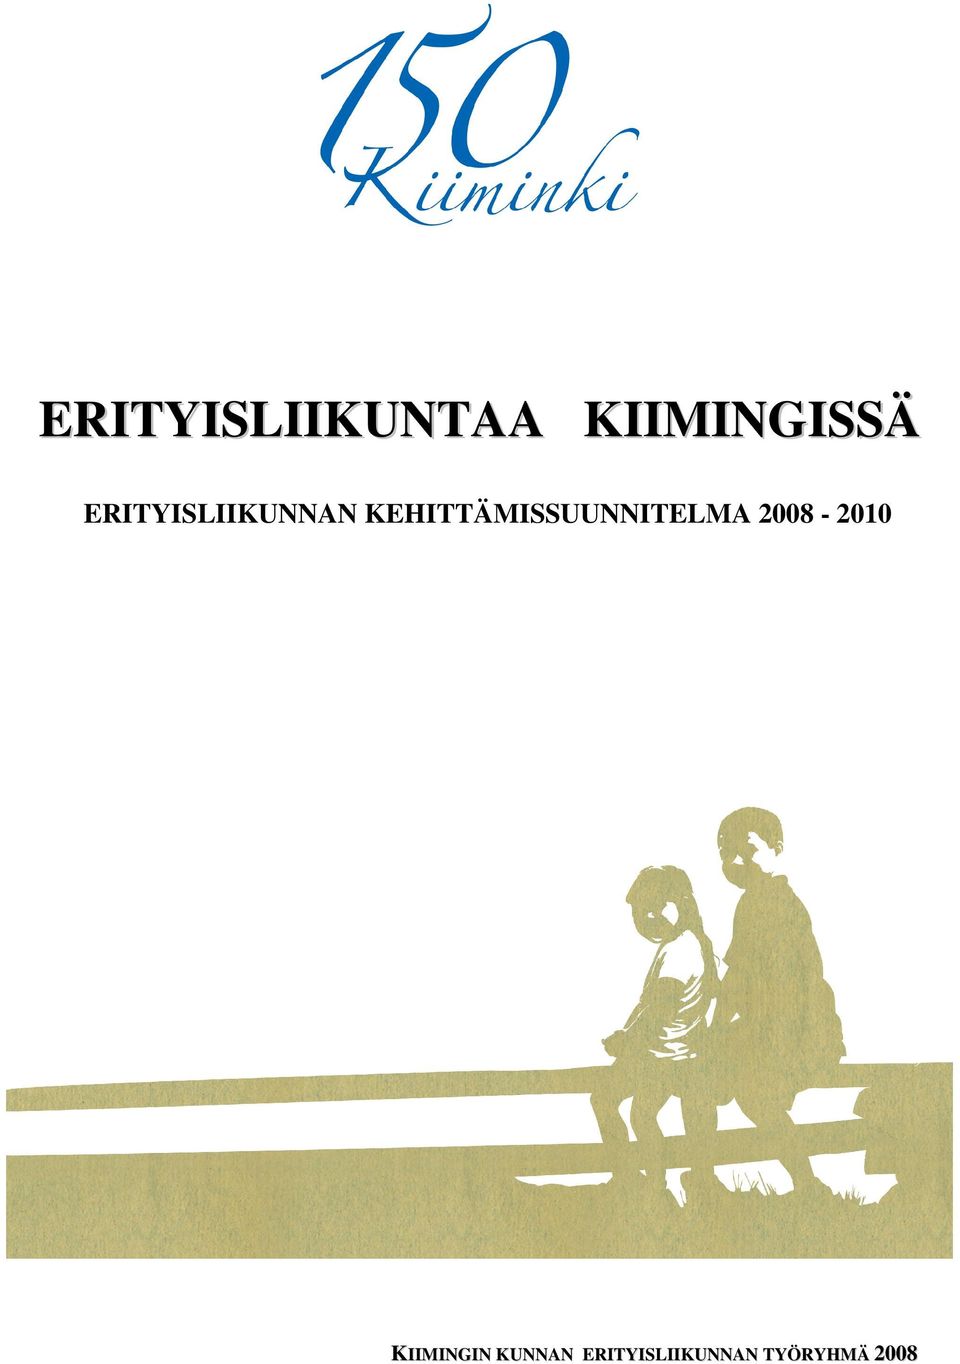 KEHITTÄMISSUUNNITELMA 2008-2010